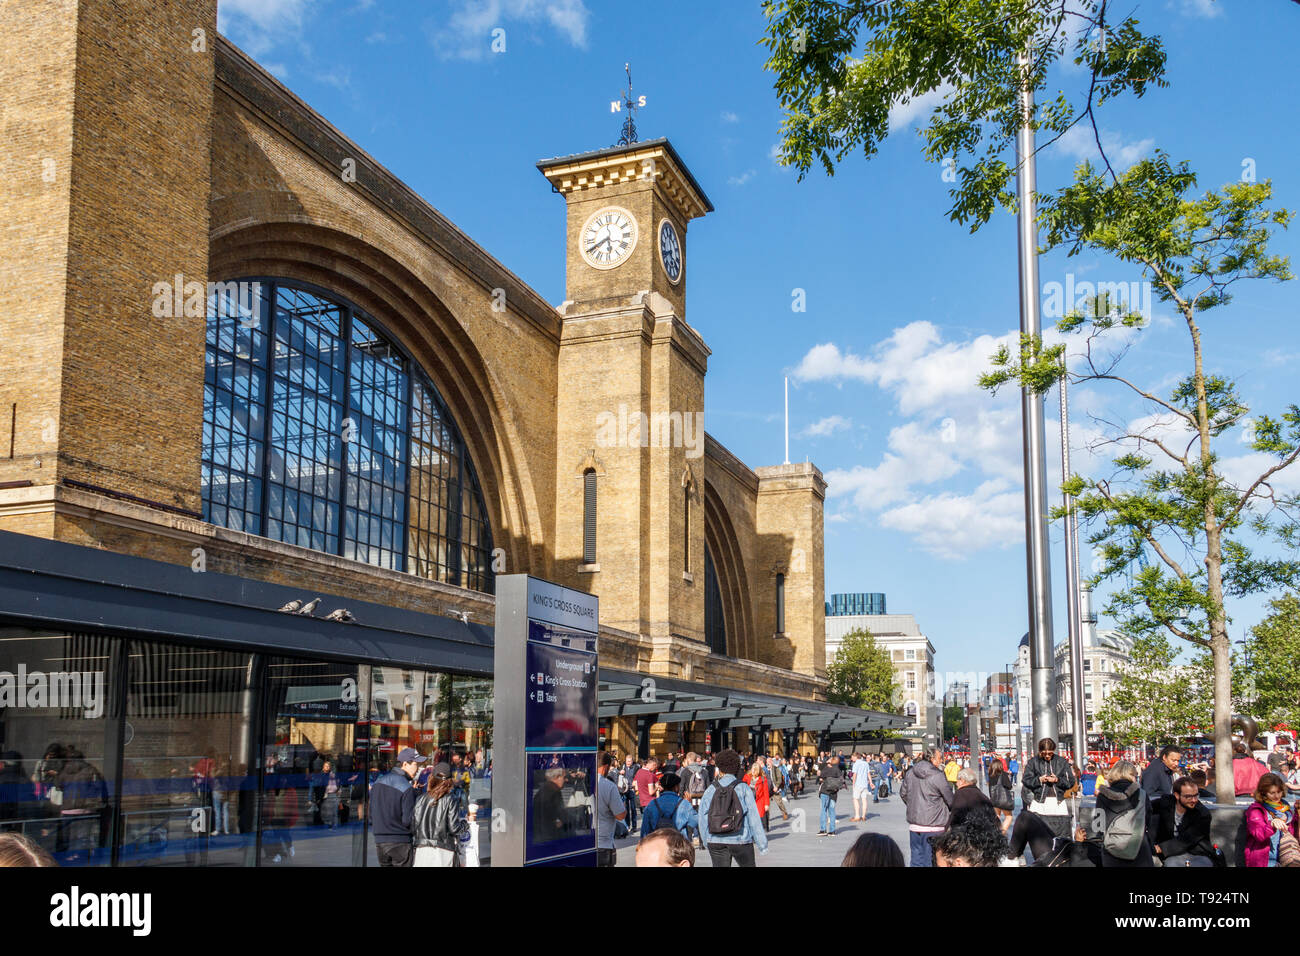 La façade et le parvis de la gare de King's Cross et tour de l'horloge, Londres, Royaume-Uni, 2019 Banque D'Images